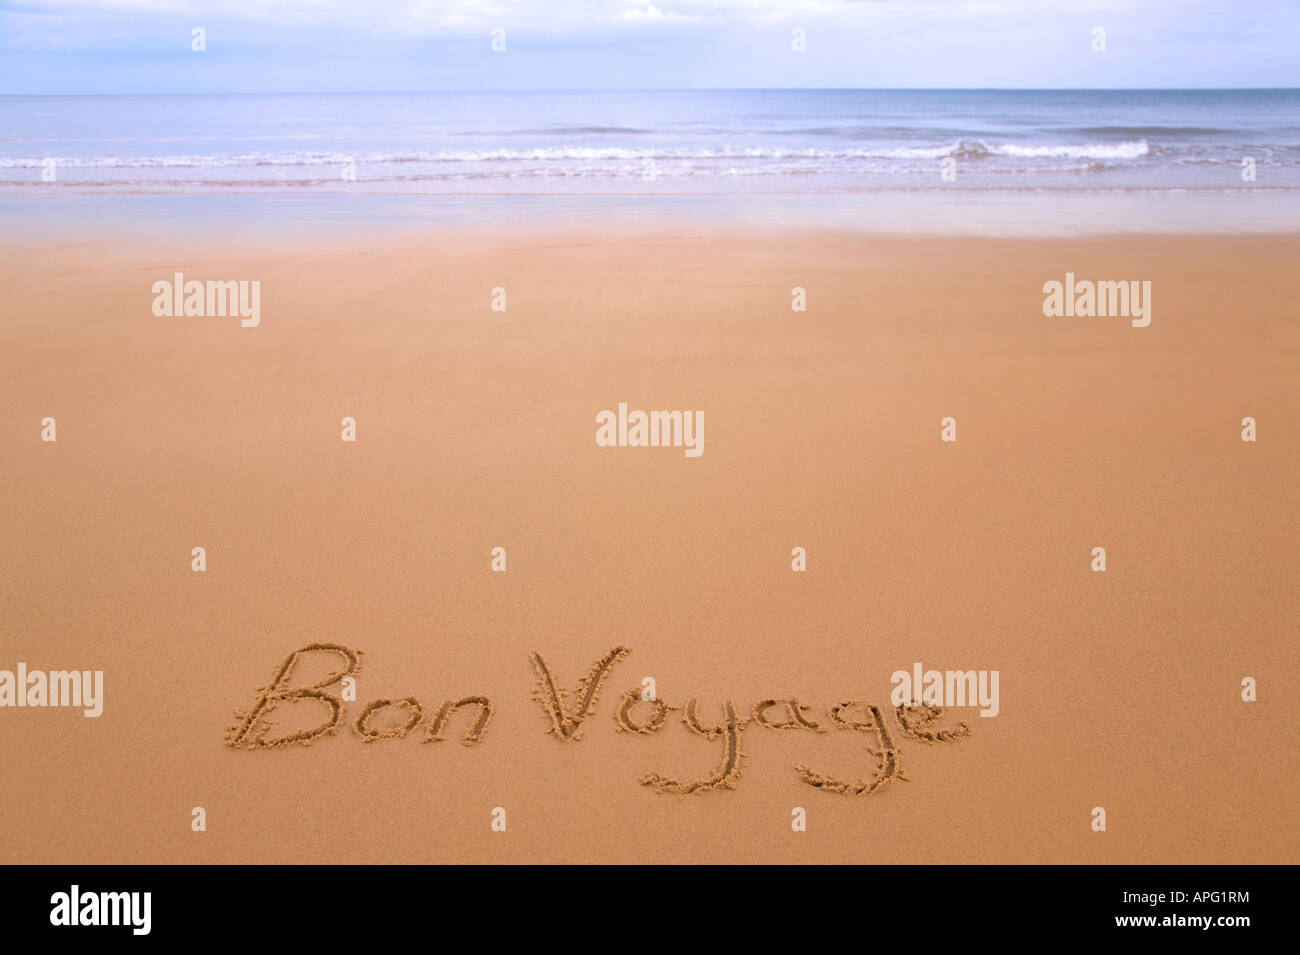 Bon Voyage geschrieben in Sand auf einem goldenen Sandstrand, Meer und Horizont in der Ferne Stockfoto